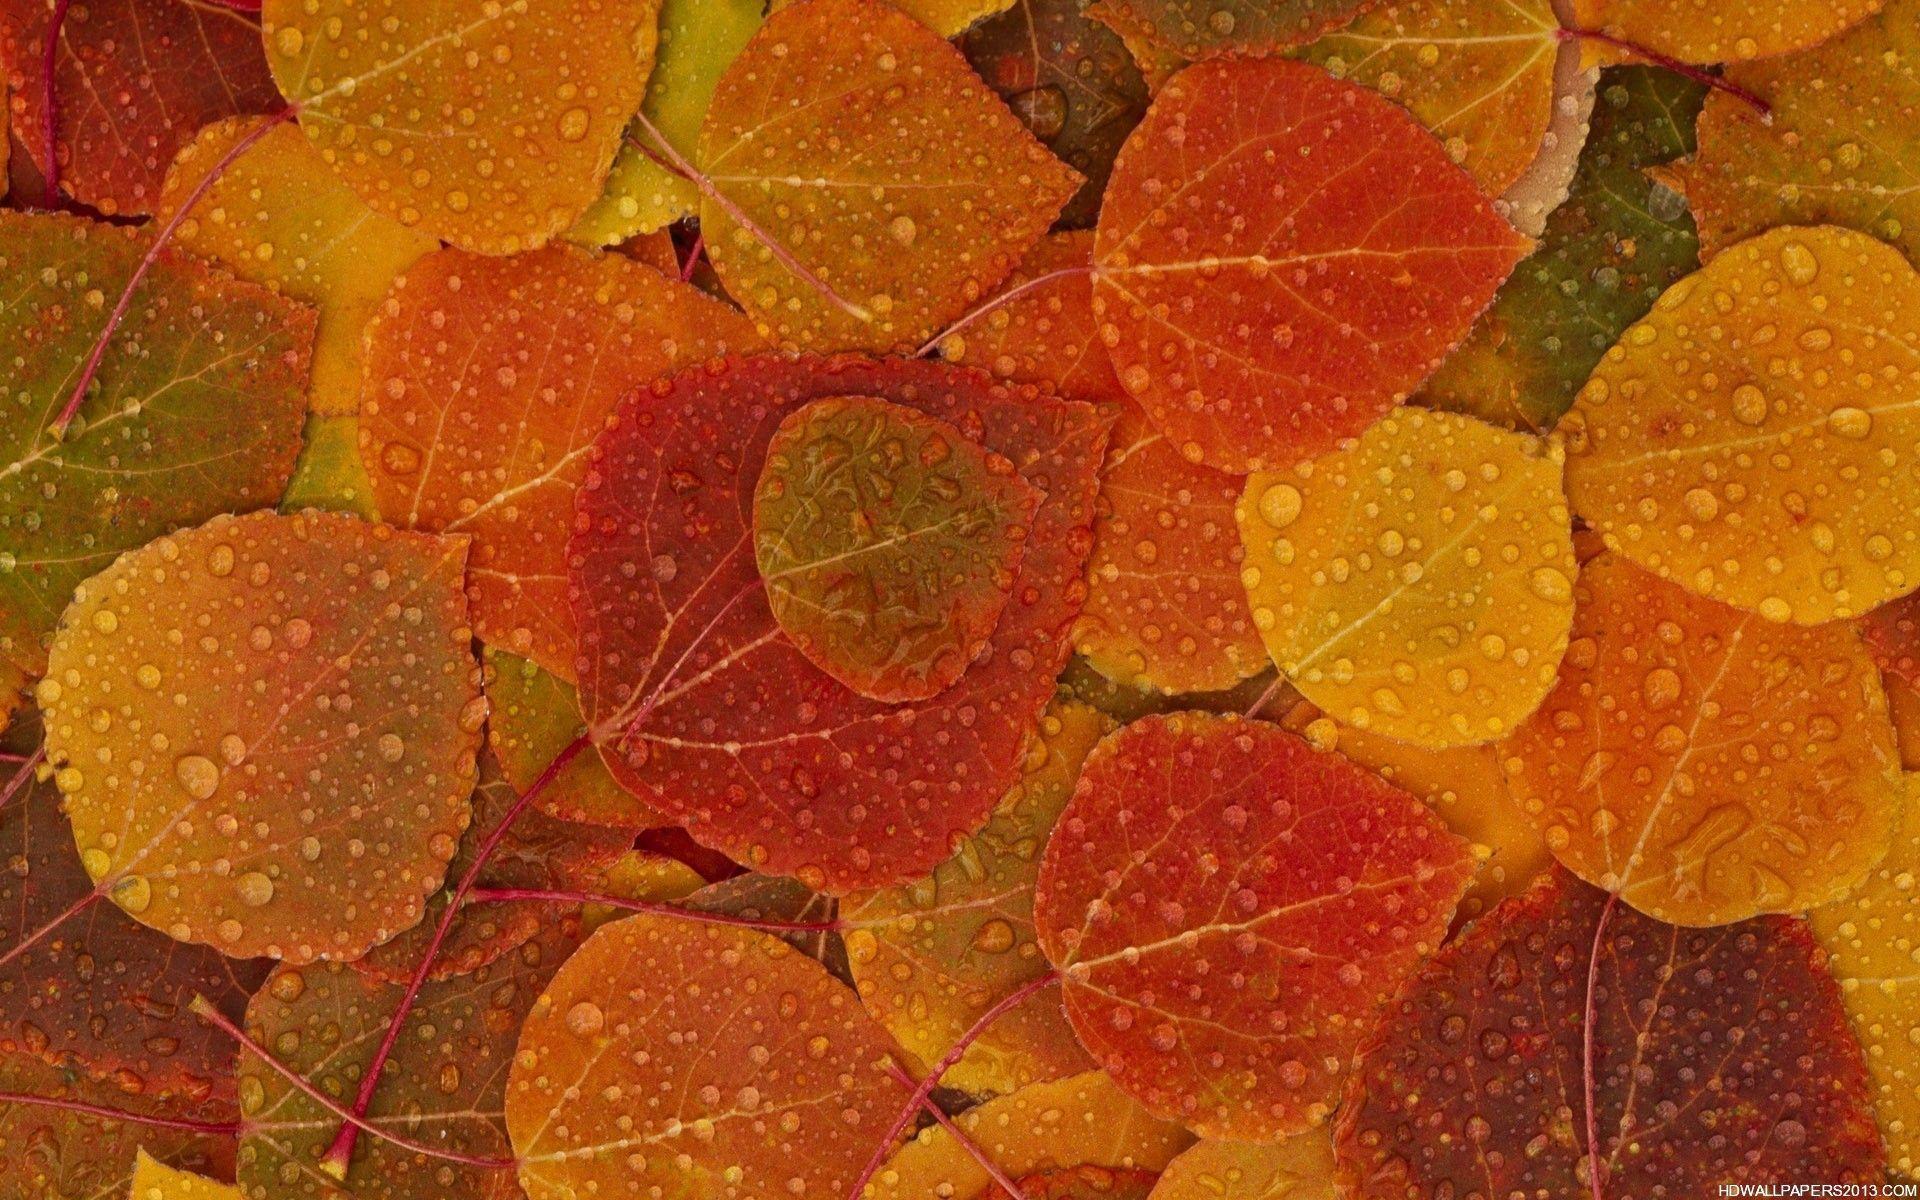 Autumn Fall Wallpaper High Definition 11282 Wallpaper. Cool